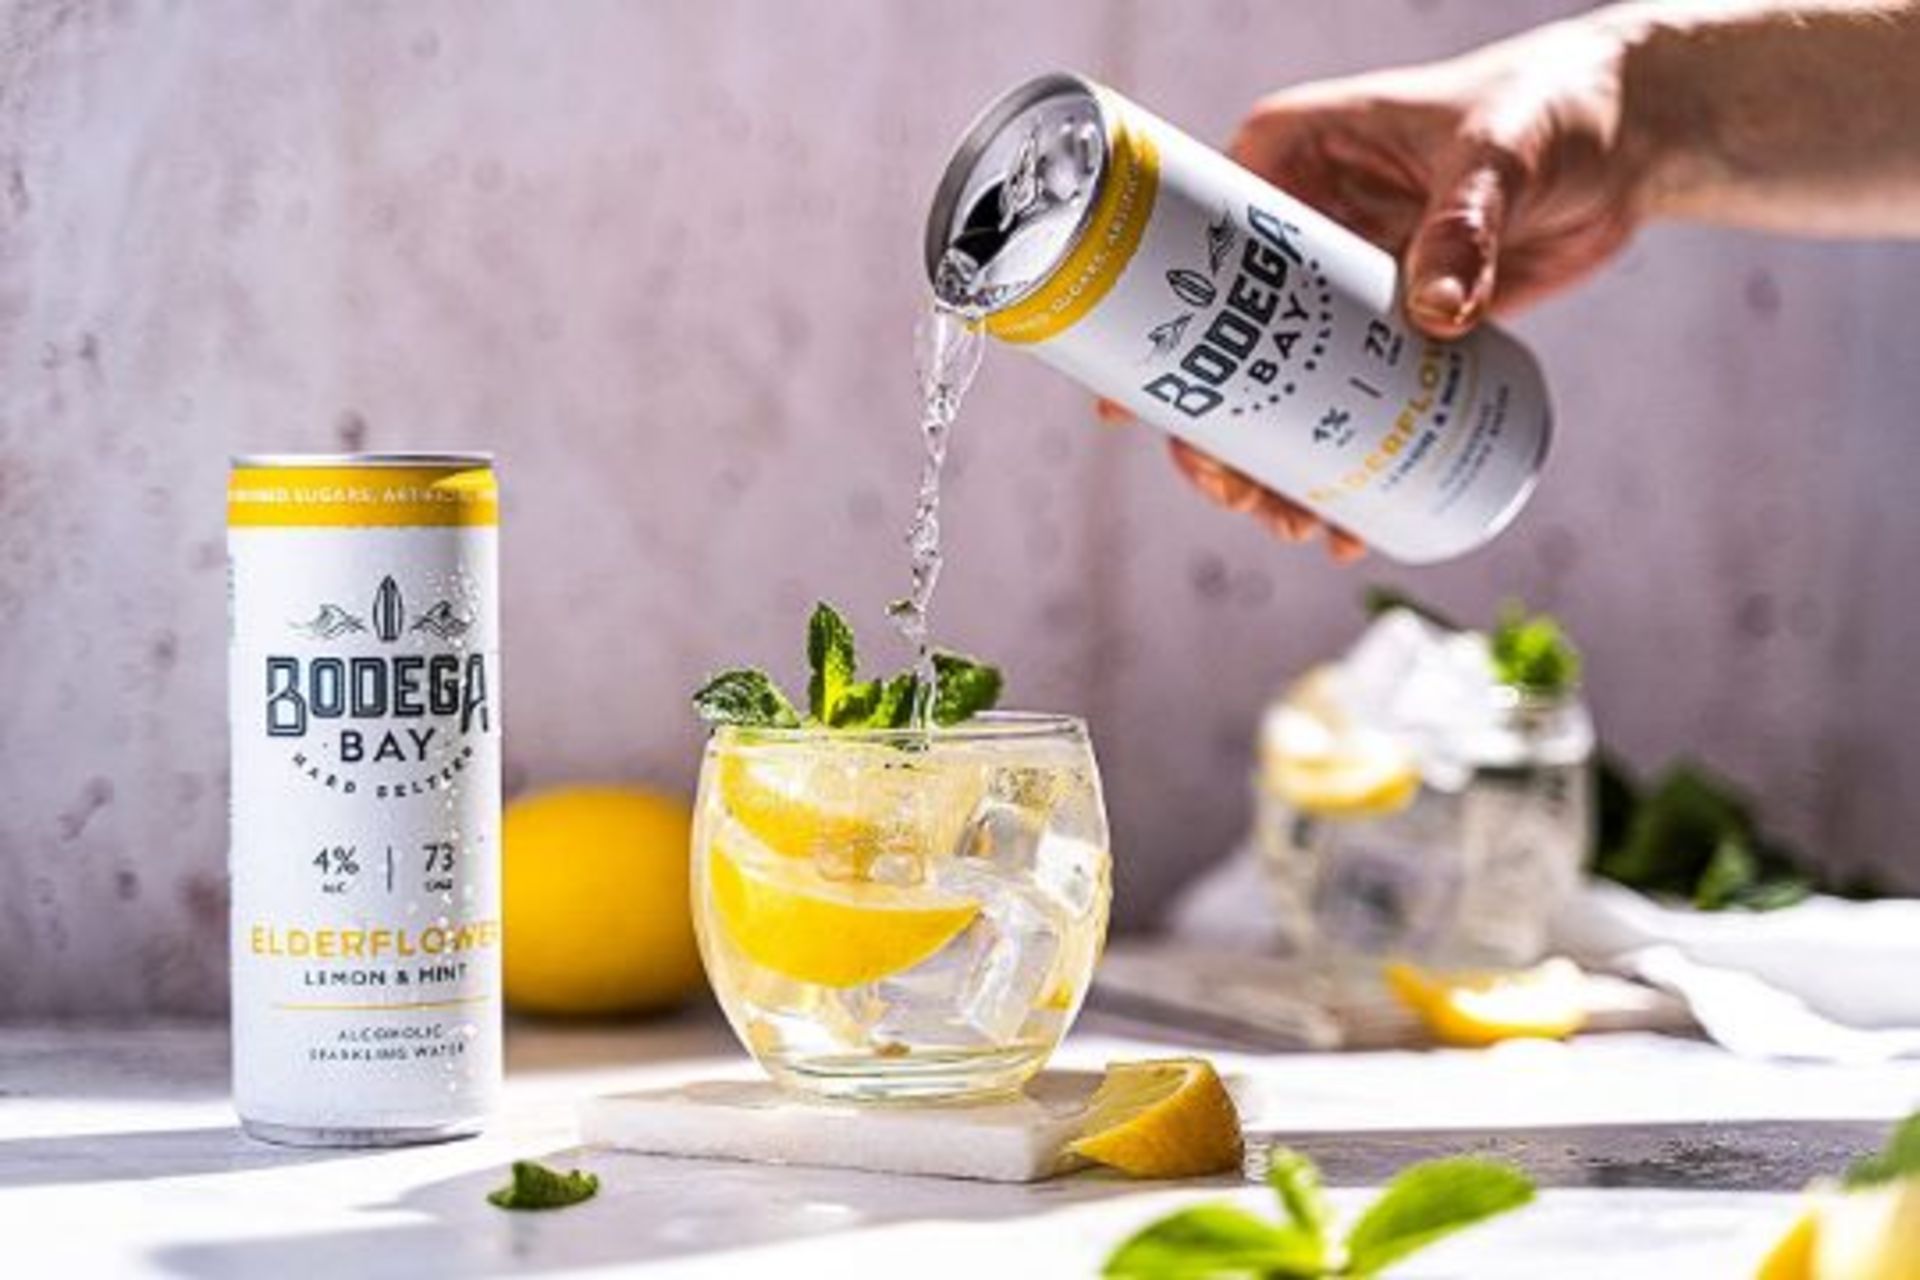 24 x Bodega Bay Hard Seltzer 250ml Alcoholic Sparkling Water Drinks - Elderflower Lemon & Mint - - Image 2 of 2